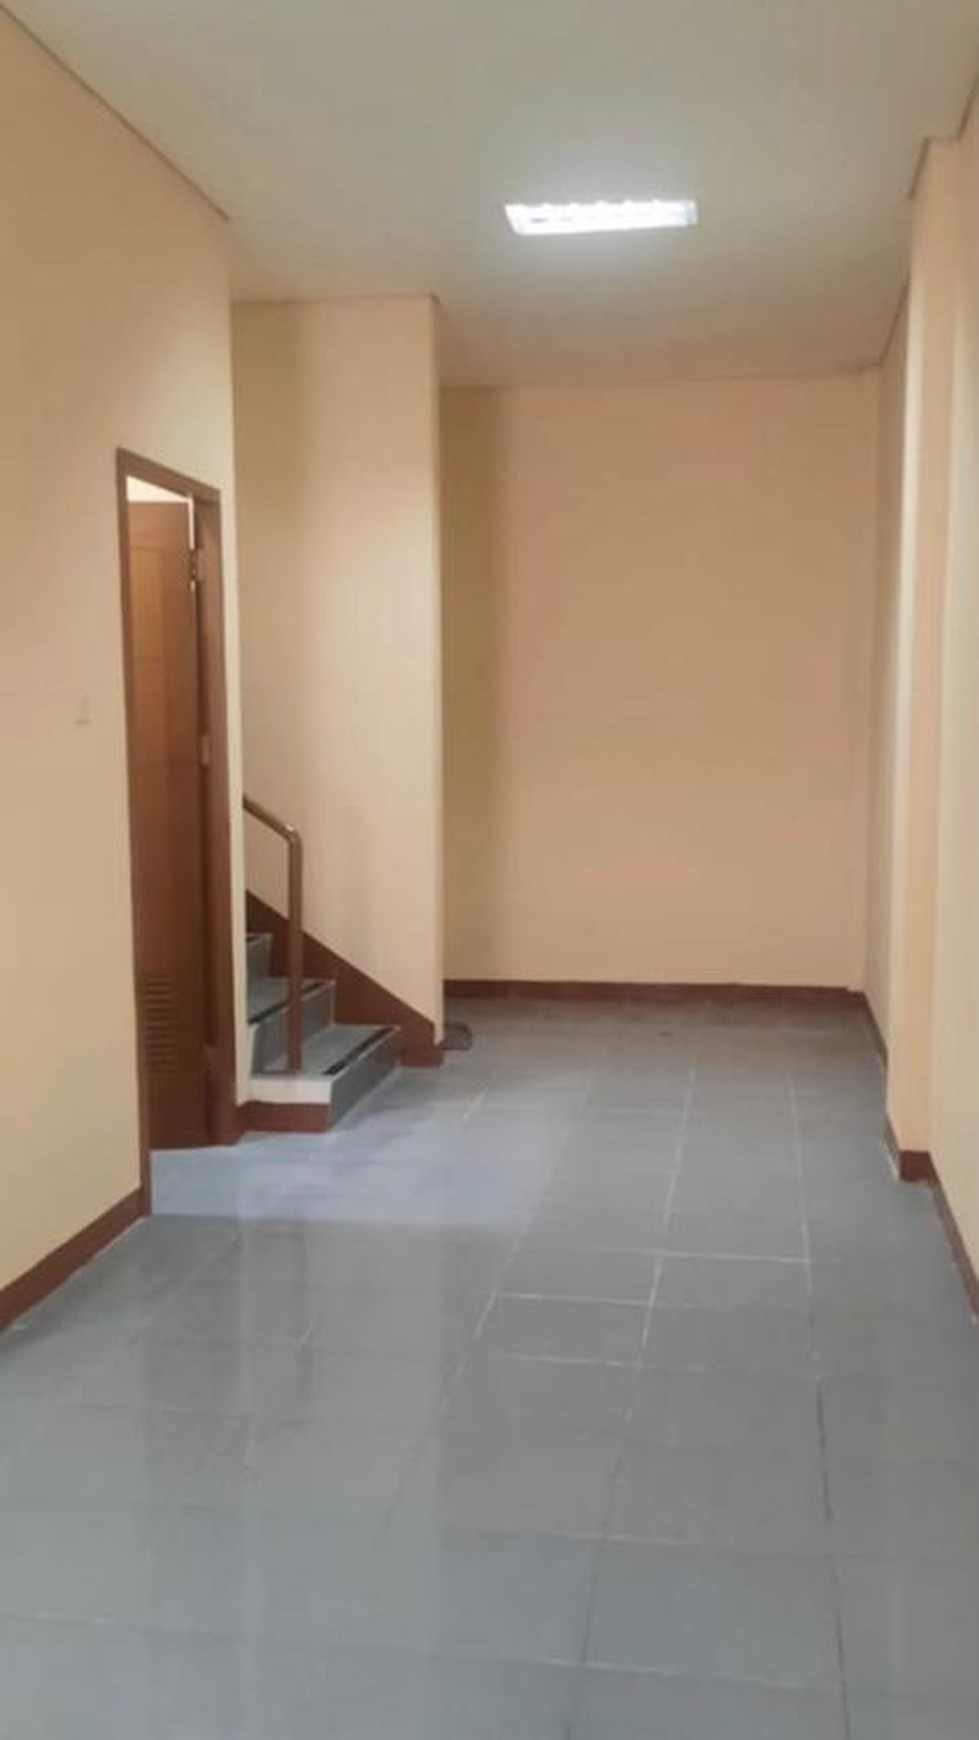 Ruko 3 1/2 lantai luas tanah 78 m2 di komplek Duta Mas Fatmawati siap pakai cocok untuk kantor 